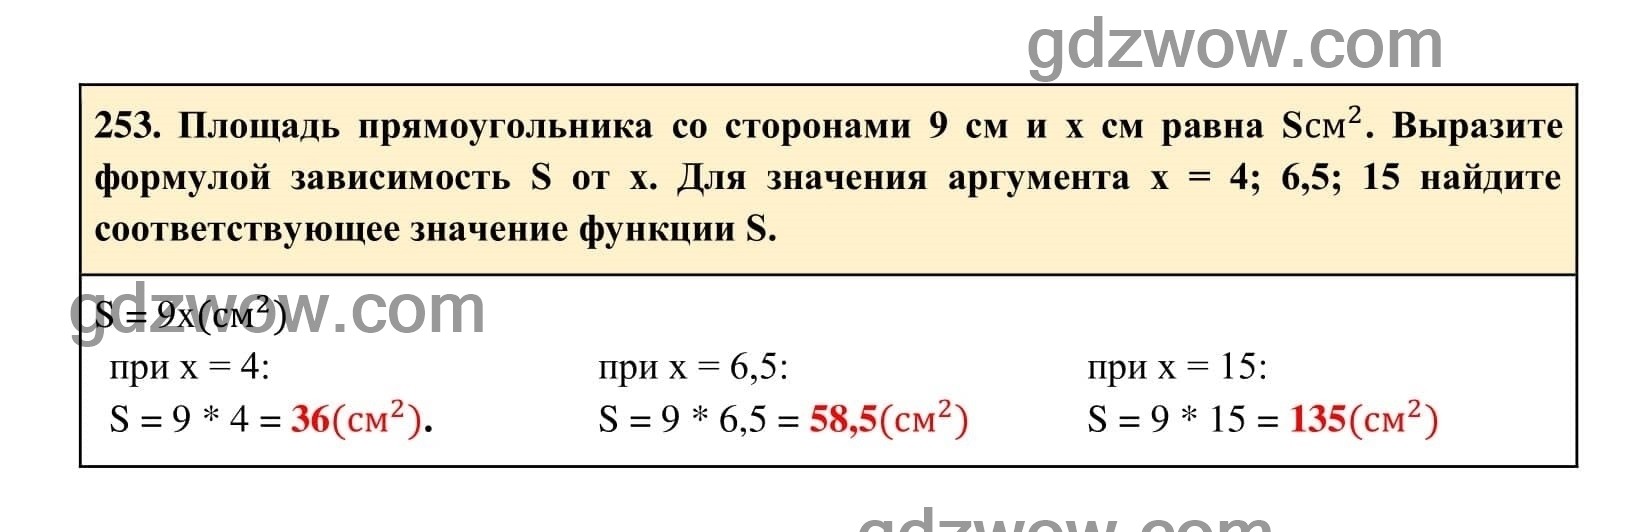 Упражнение 258 - ГДЗ по Алгебре 7 класс Учебник Макарычев (решебник) - GDZwow